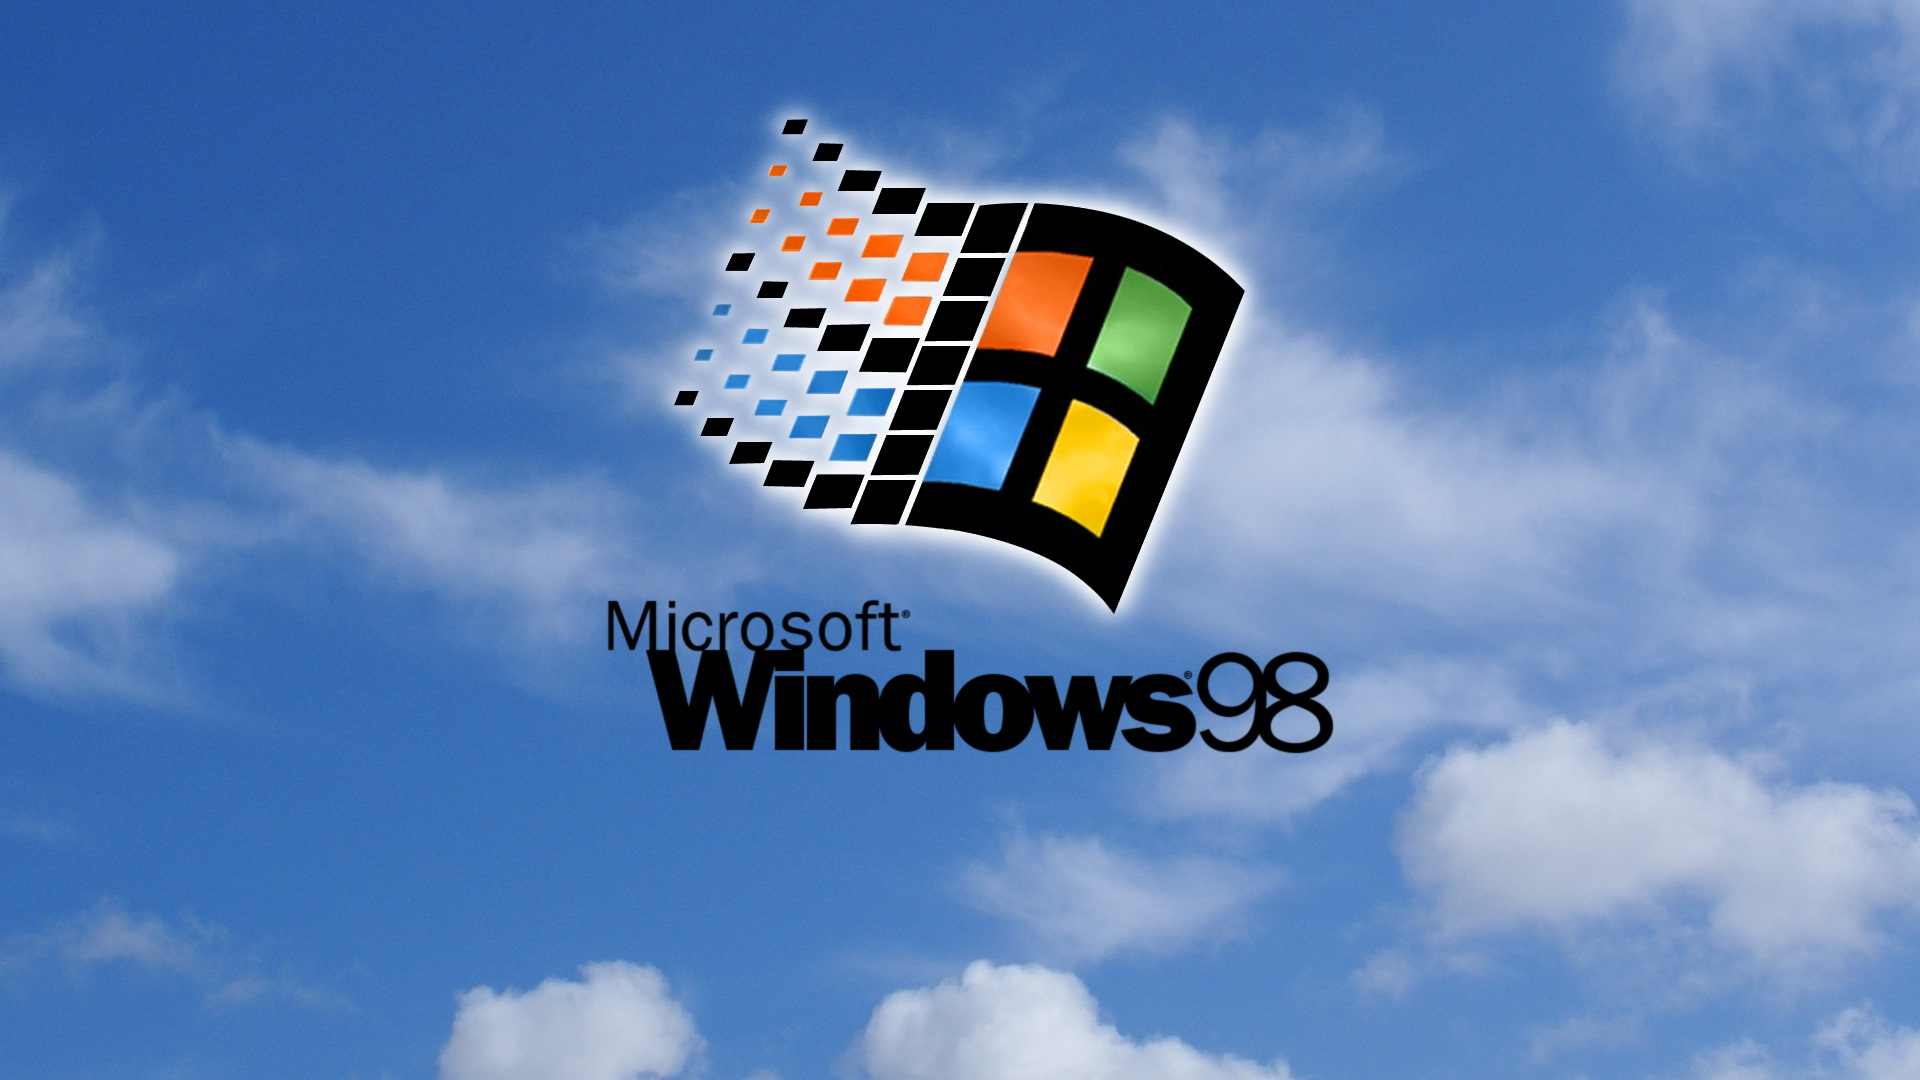 Hãy lựa chọn một bức hình nền Windows 98 đẹp để thực sự làm mới và tạo nên một không gian làm việc hoàn hảo cho mình. Từ phong cảnh thiên nhiên đến những đoạn phim kinh điển, bạn sẽ không thể ngừng chiêm ngưỡng bức hình nền ưng ý của mình.